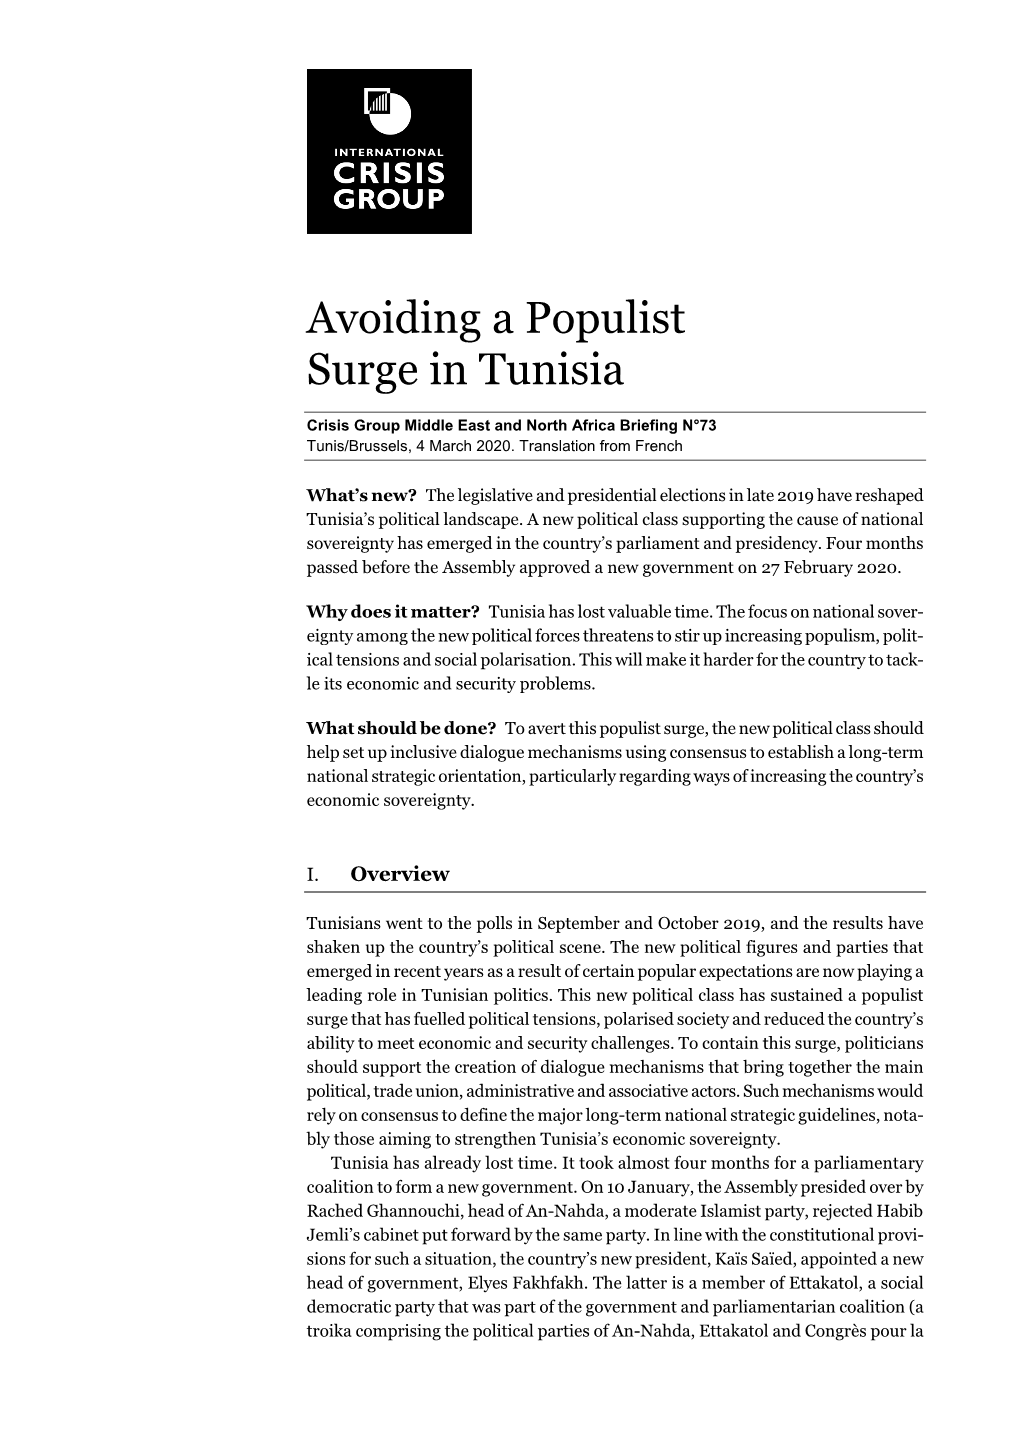 Avoiding a Populist Surge in Tunisia